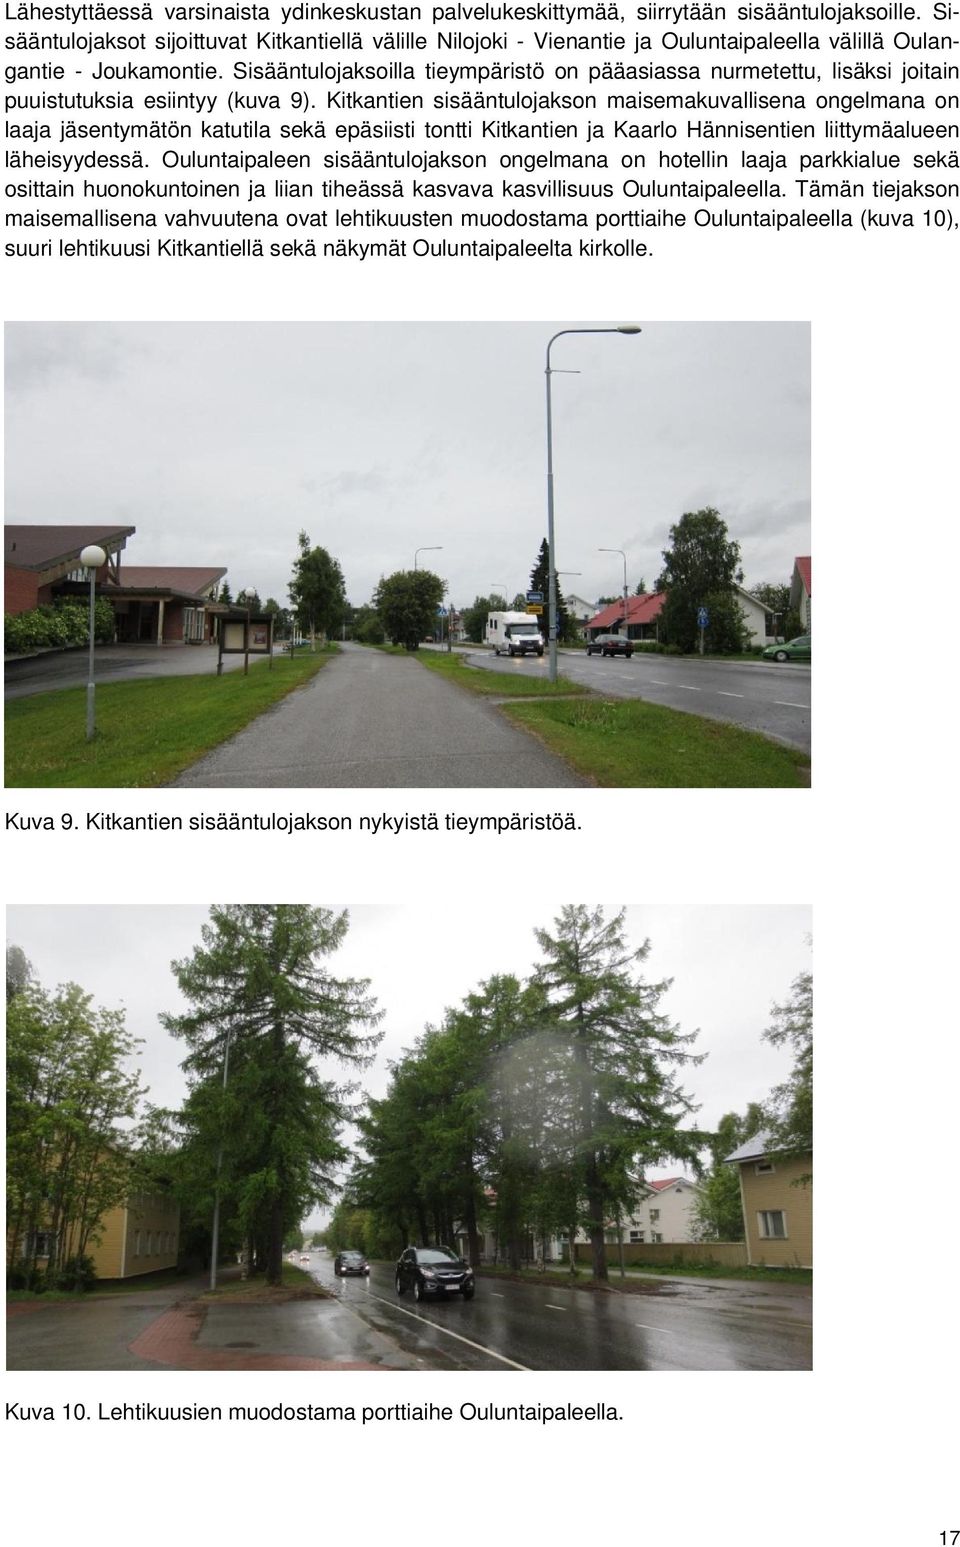 Sisääntulojaksoilla tieympäristö on pääasiassa nurmetettu, lisäksi joitain puuistutuksia esiintyy (kuva 9).